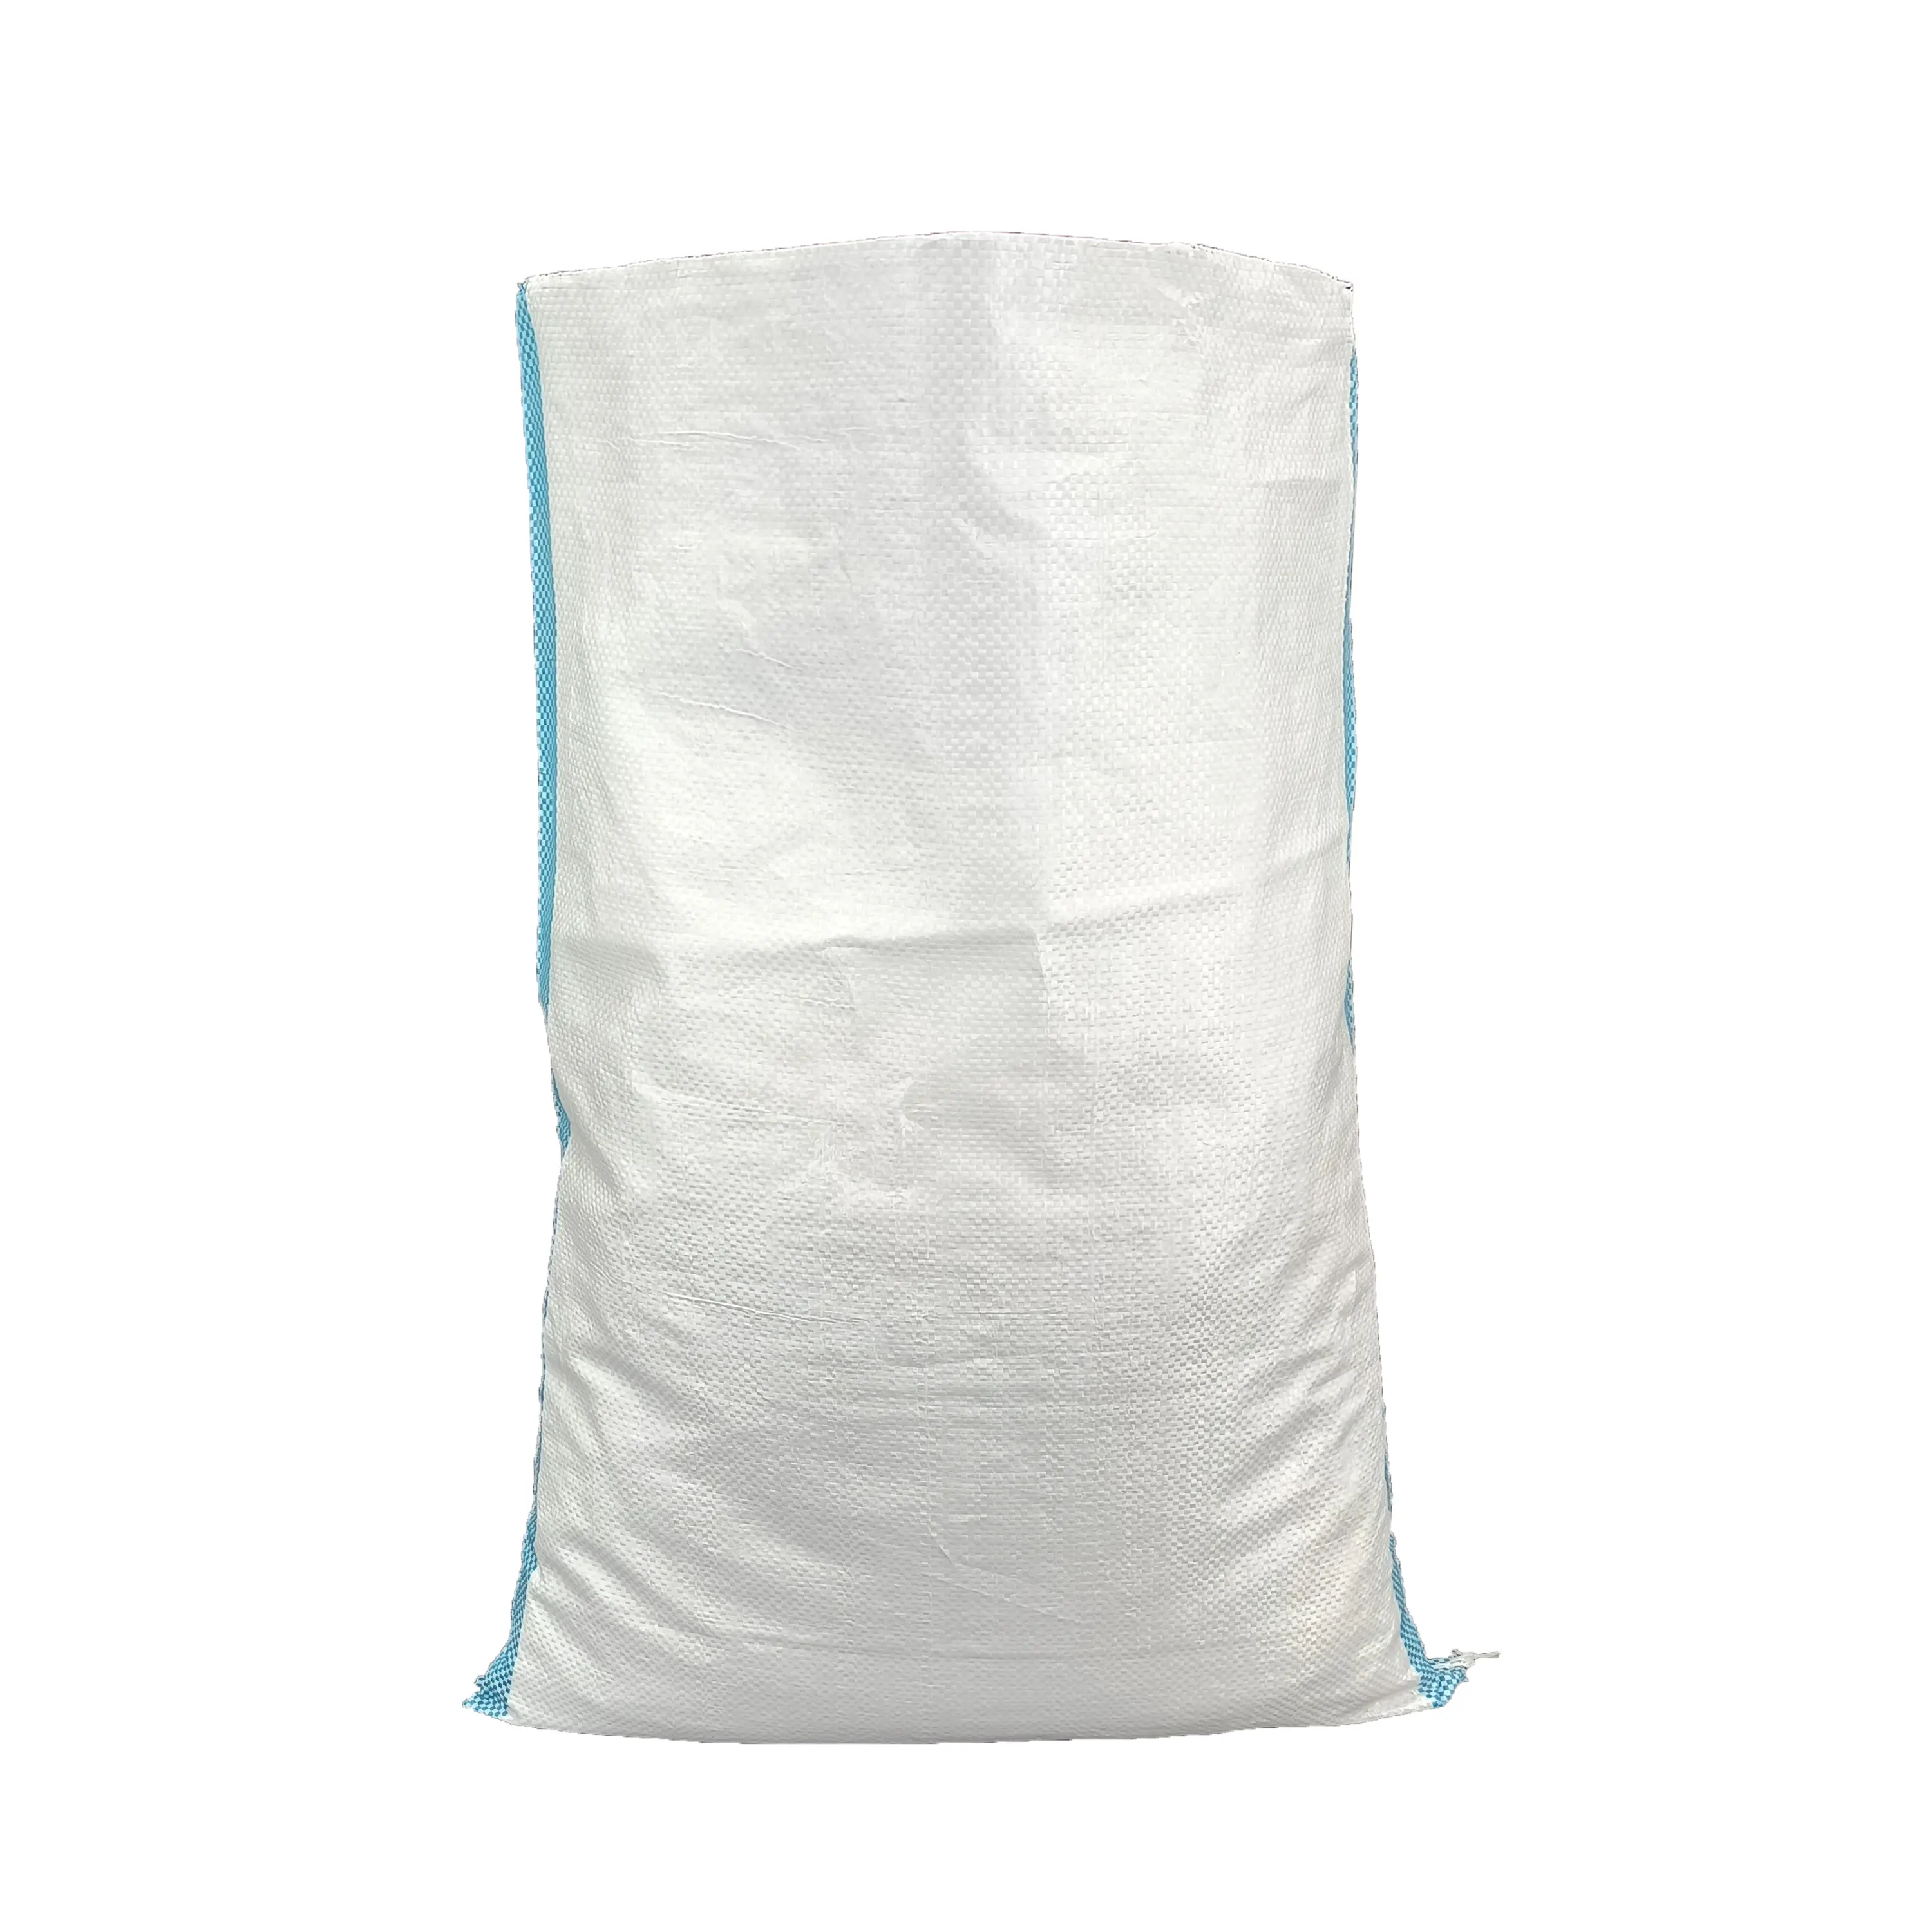 5 кг 25 кг 50 кг полипропиленовый рисовый мешок ламинированный полипропиленовый тканый мешок Горячая Распродажа пластиковый мешок